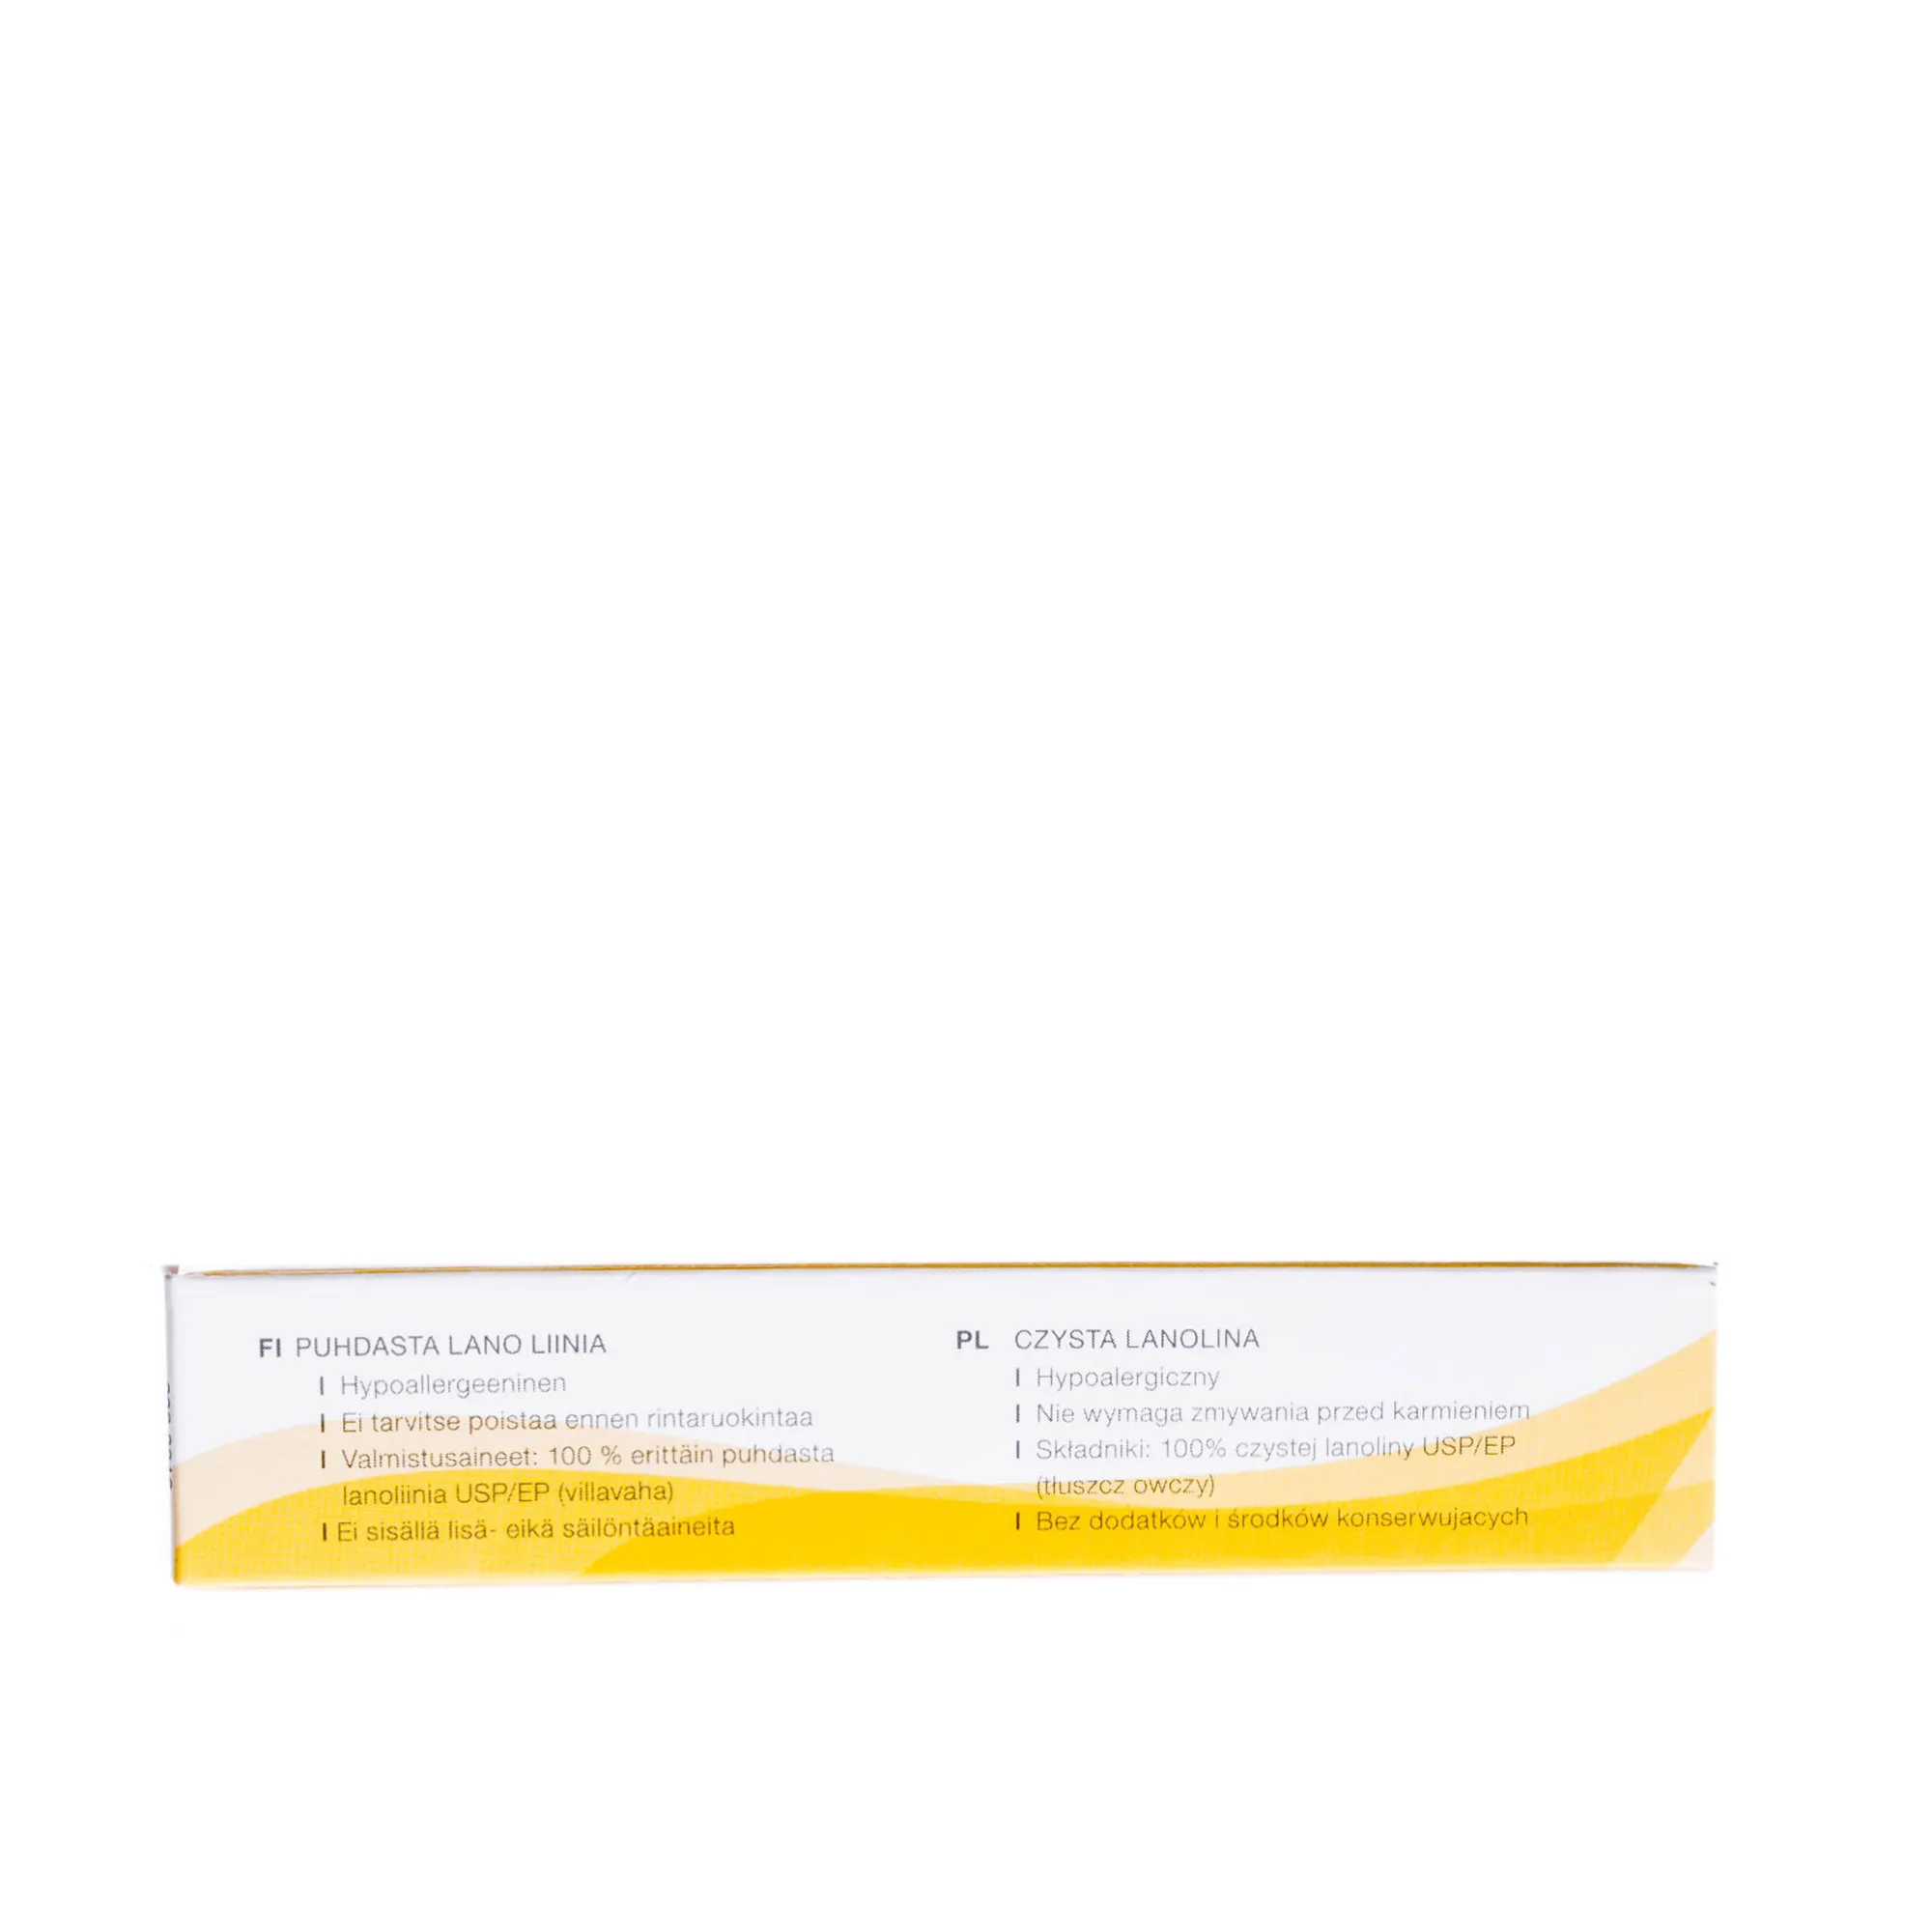 Medela Purelan 100 - czysta lanolina łagodząca podrażnienia brodawek sutkowych, 7g 